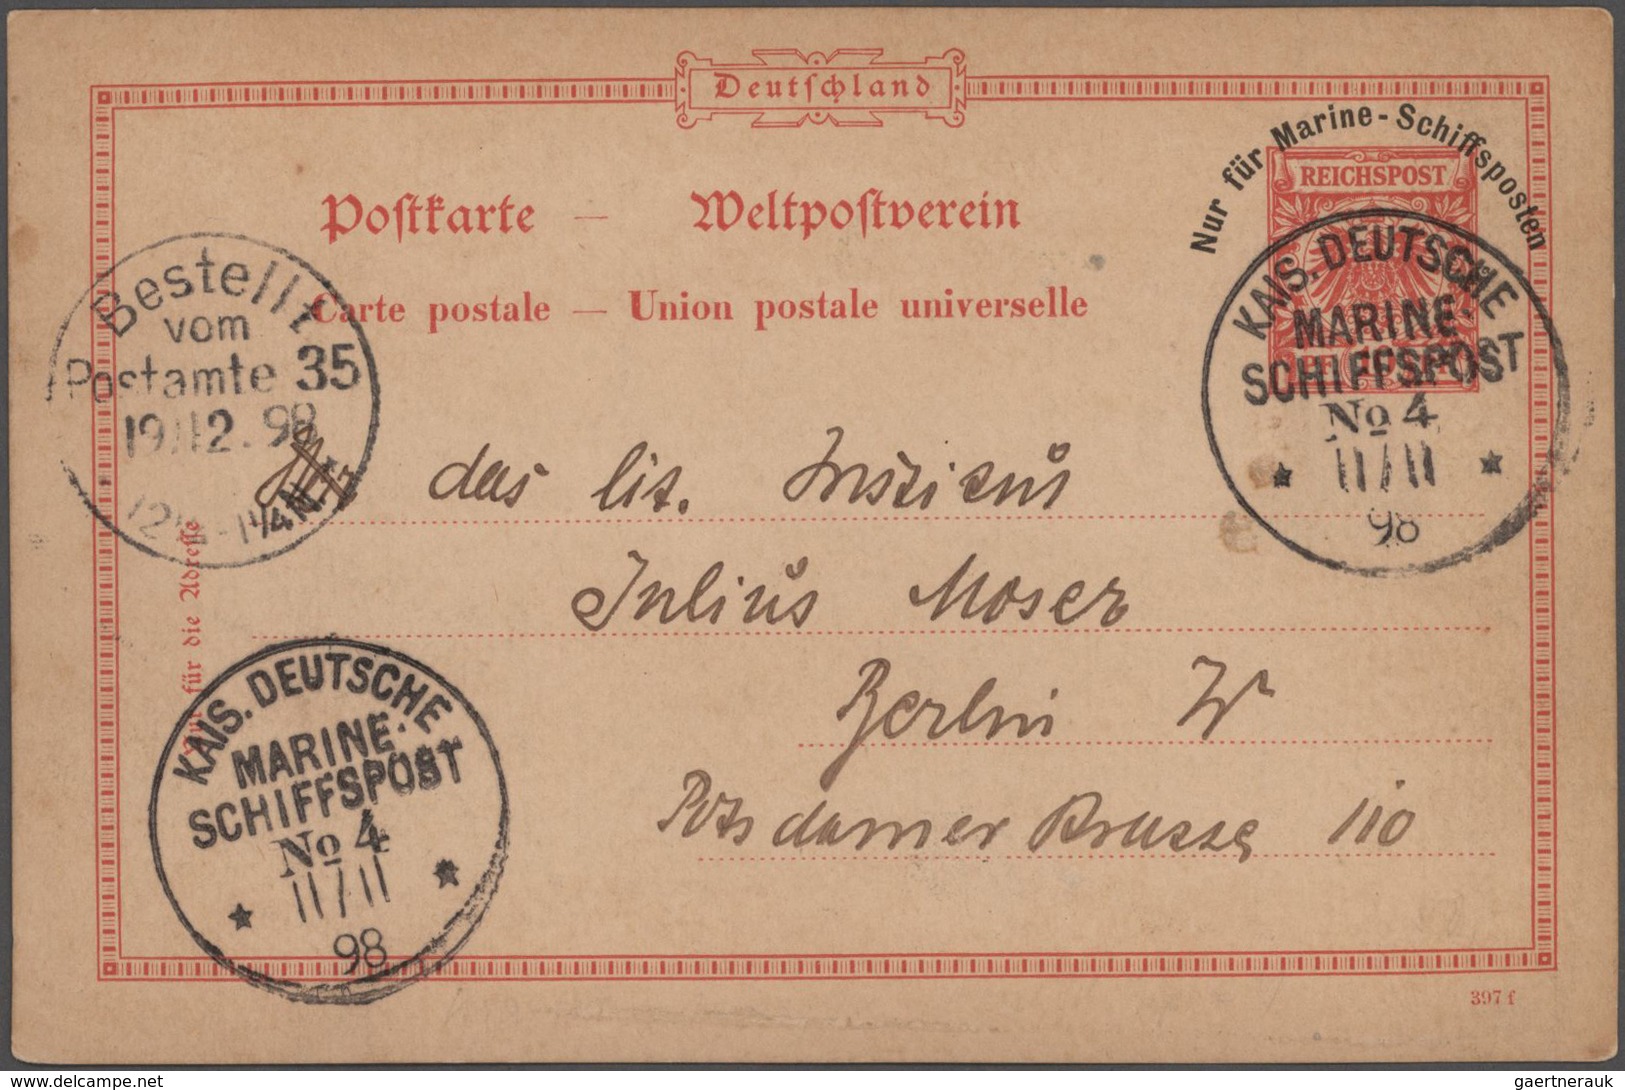 Deutsche Schiffspost - Marine: 1898, kleine Spezialsammlung von insgesamt 16 Belegen zum Thema "Mani